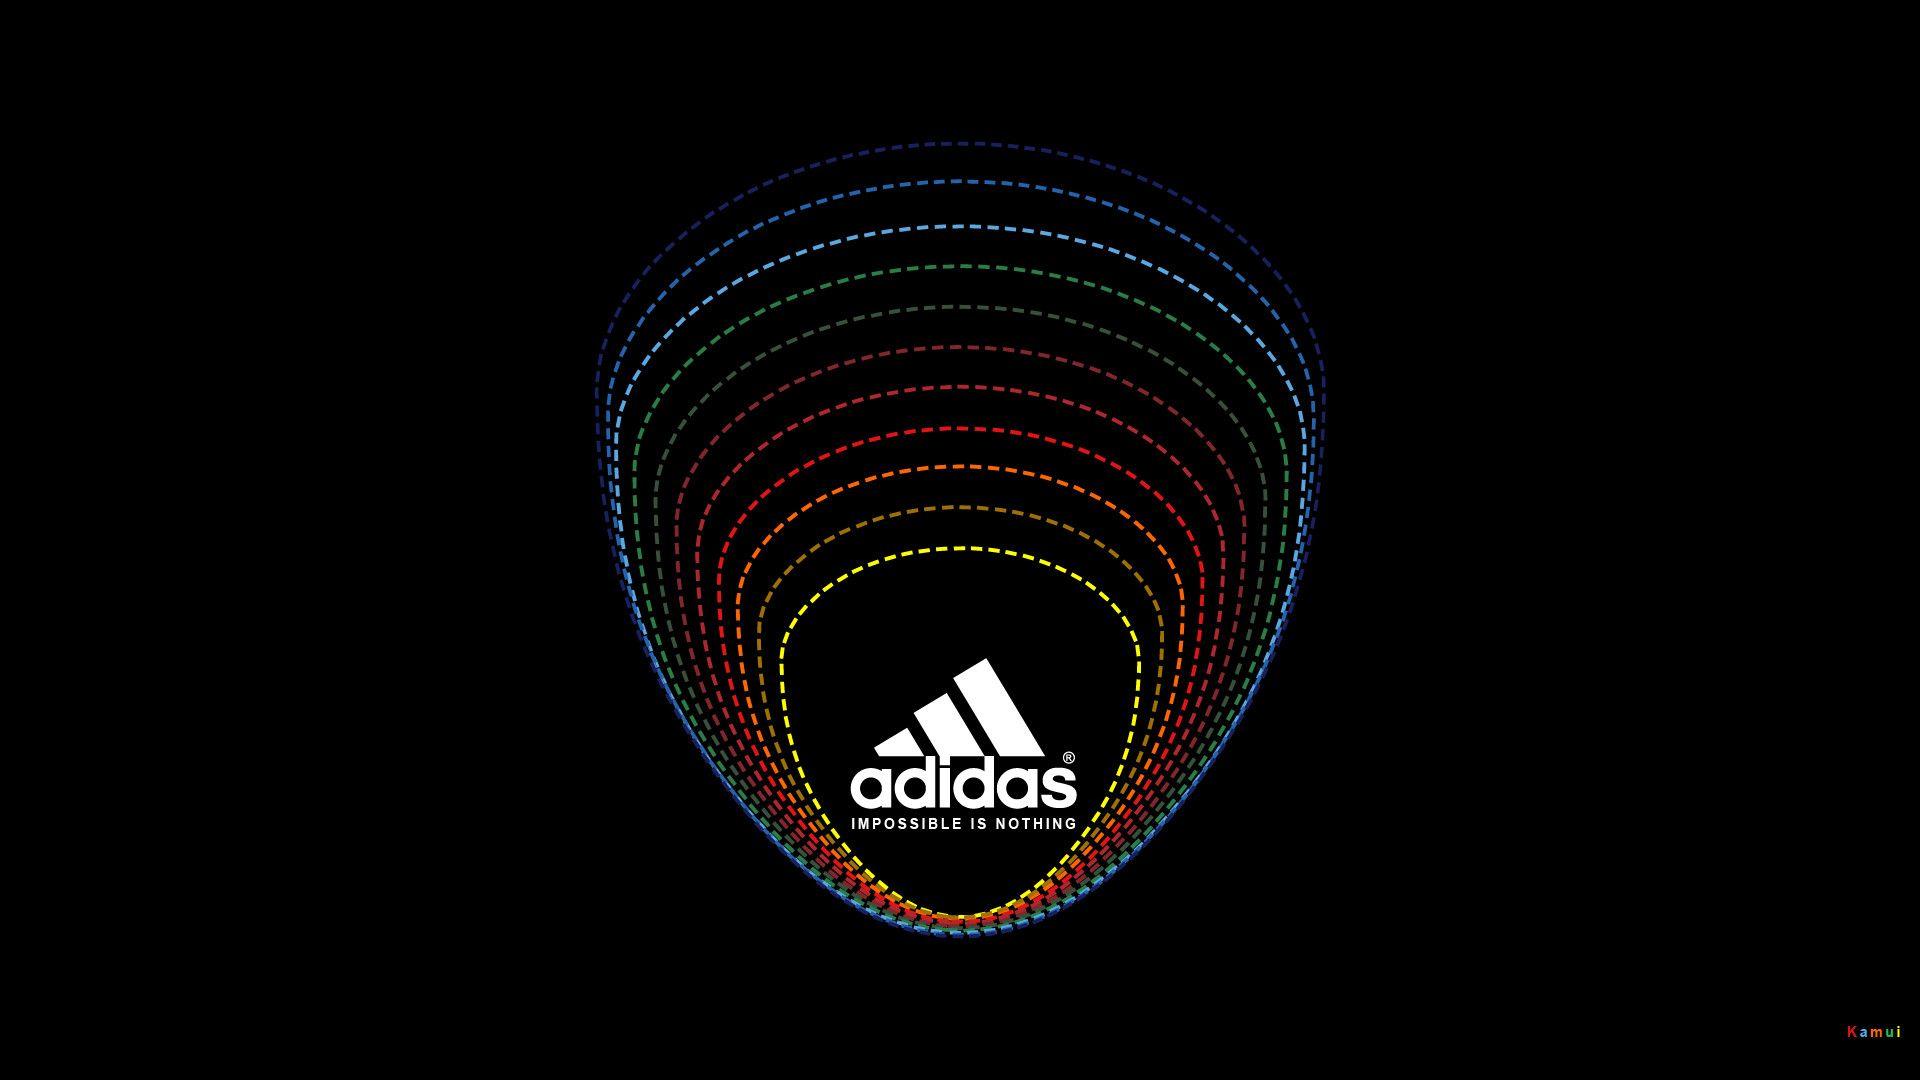 Wallpaper For > Adidas Originals Wallpaper HD 1080p